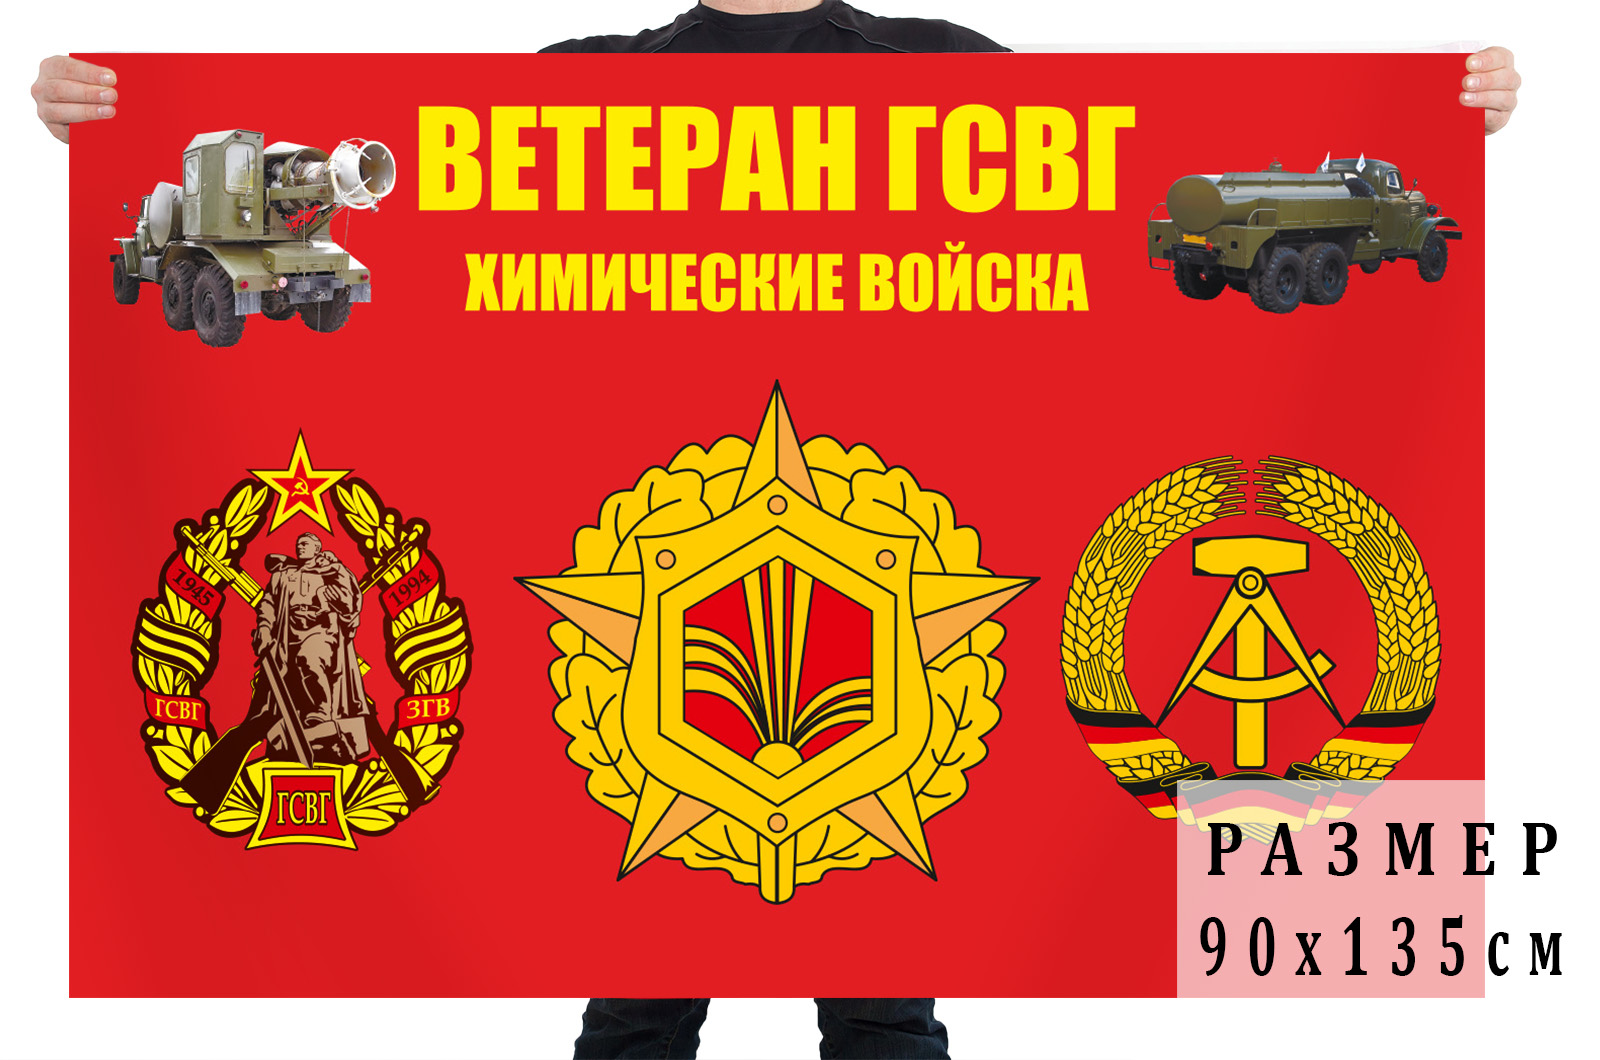 Купить флаг Ветеран ГСВГ Химические войска